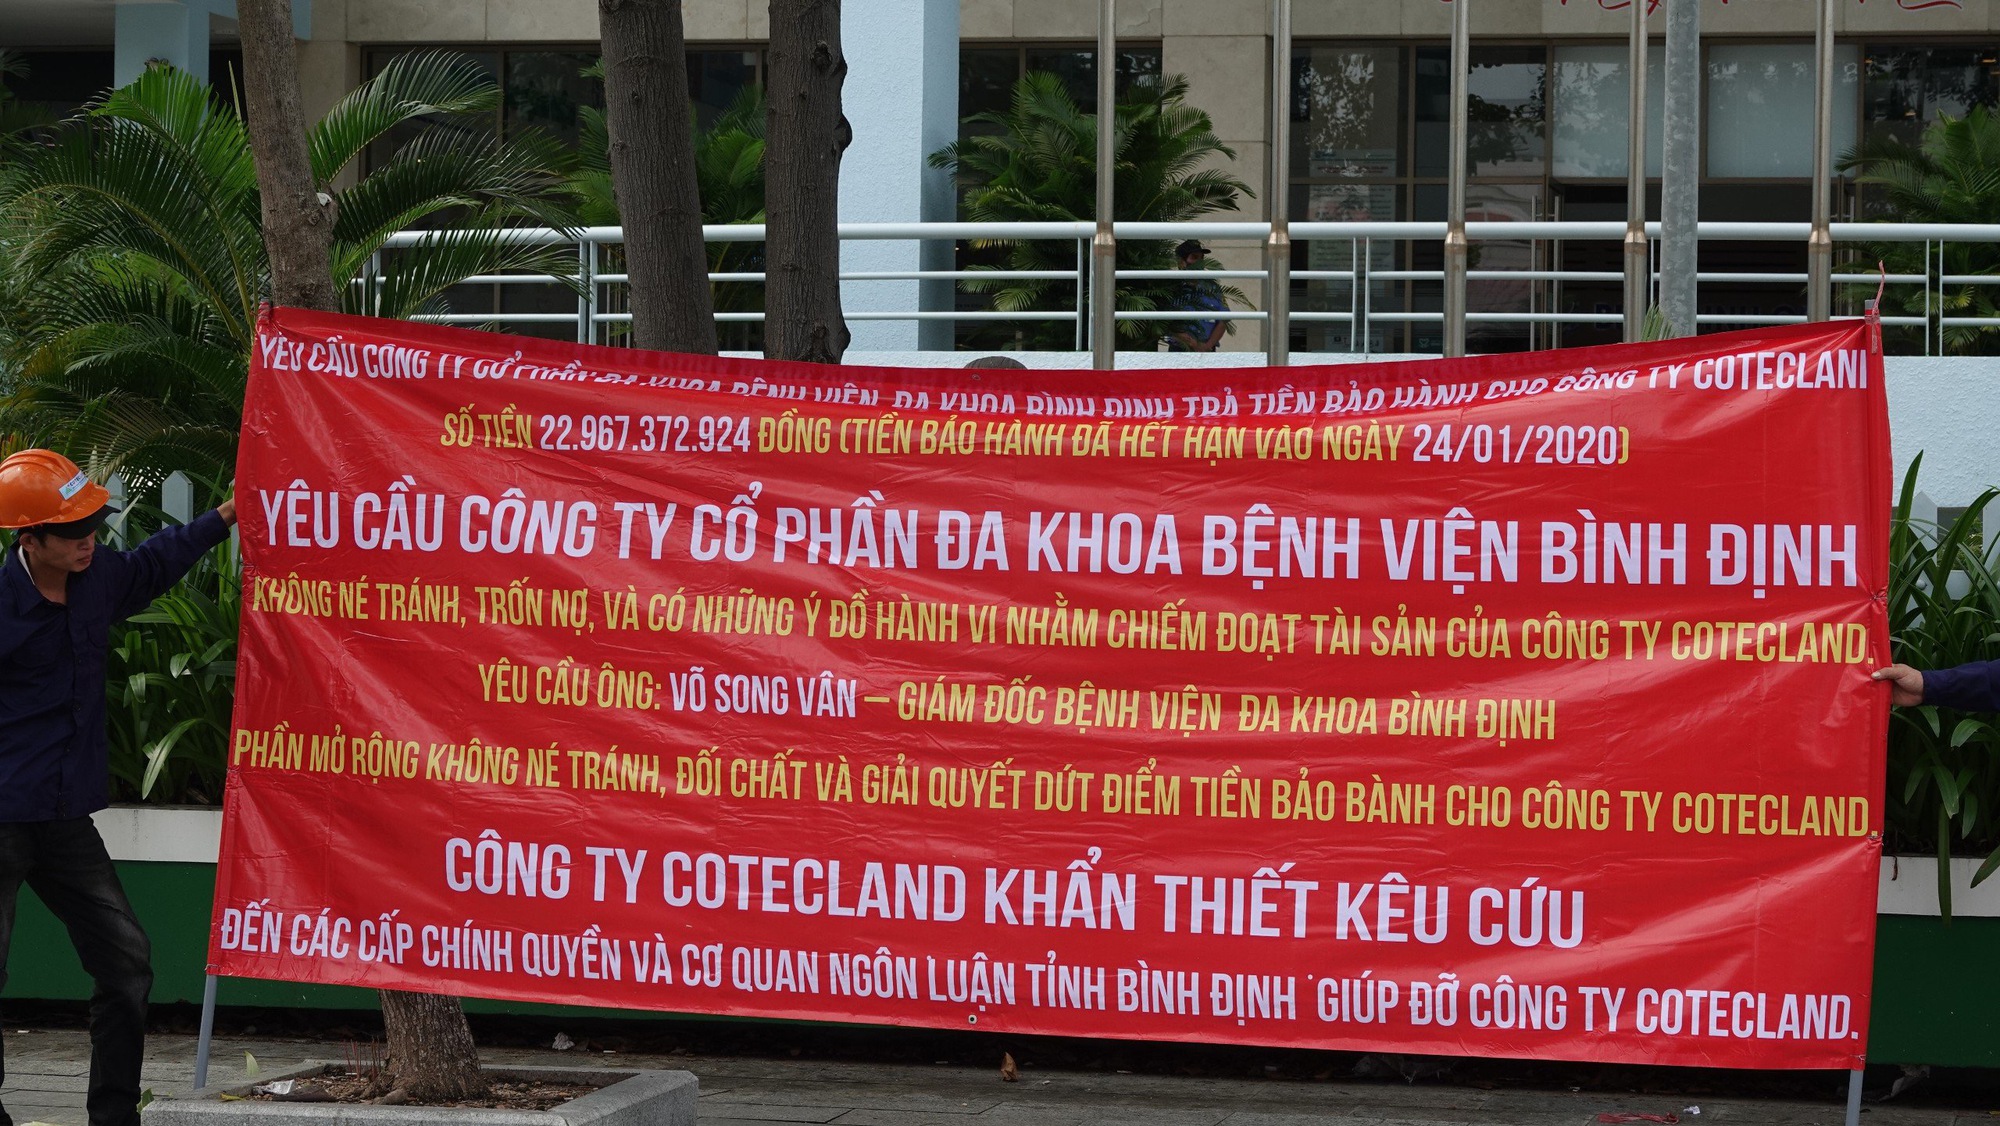 Một bệnh viện lớn ở Bình Định bất ngờ bị căng băng rôn đòi nợ - Ảnh 1.